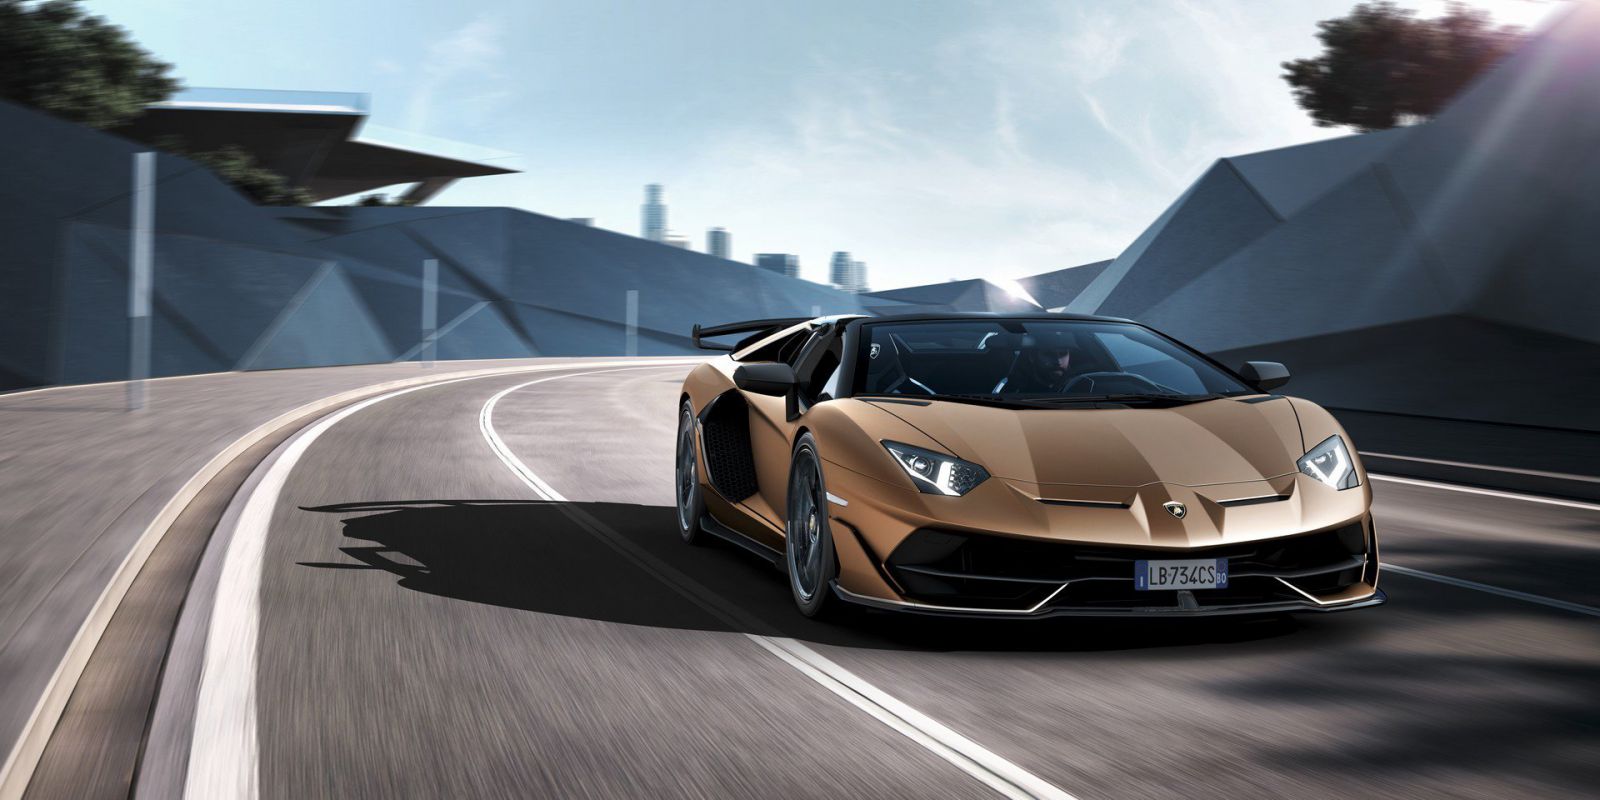 100 Hình Hình ảnh Ô Tô Lamborghini Đẹp Nhất Hiện Nay